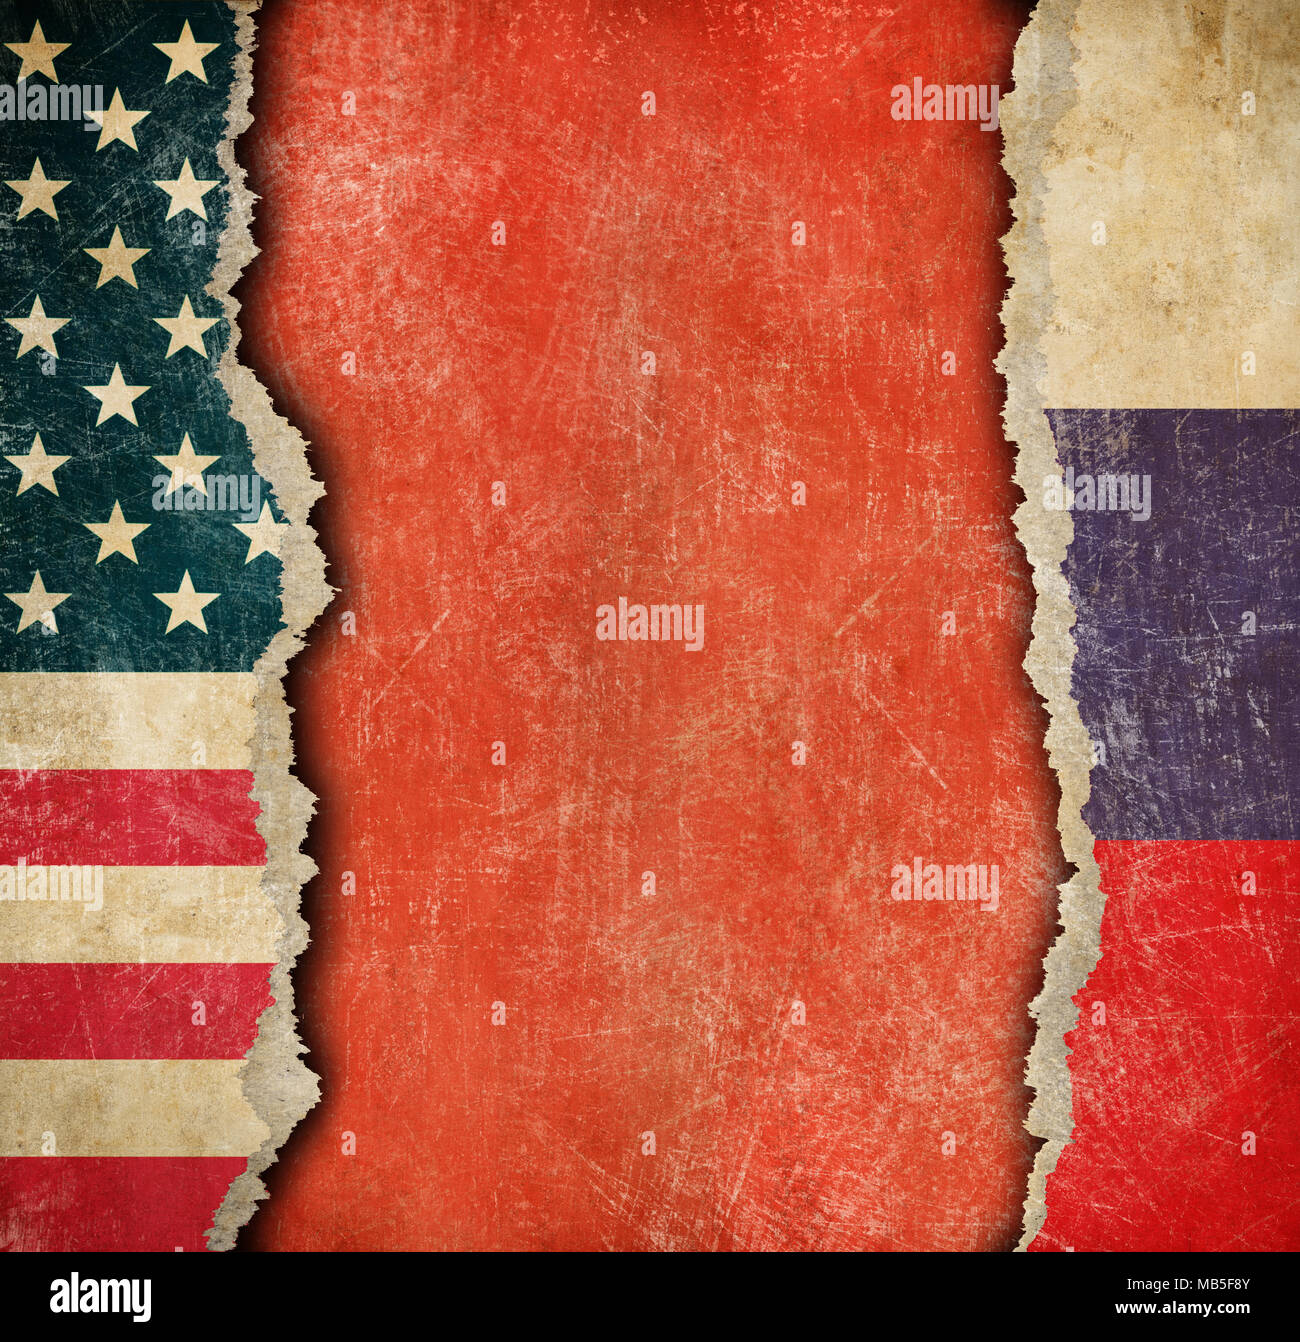 USA und Russische zerrissenes Papier Flags Stockfoto